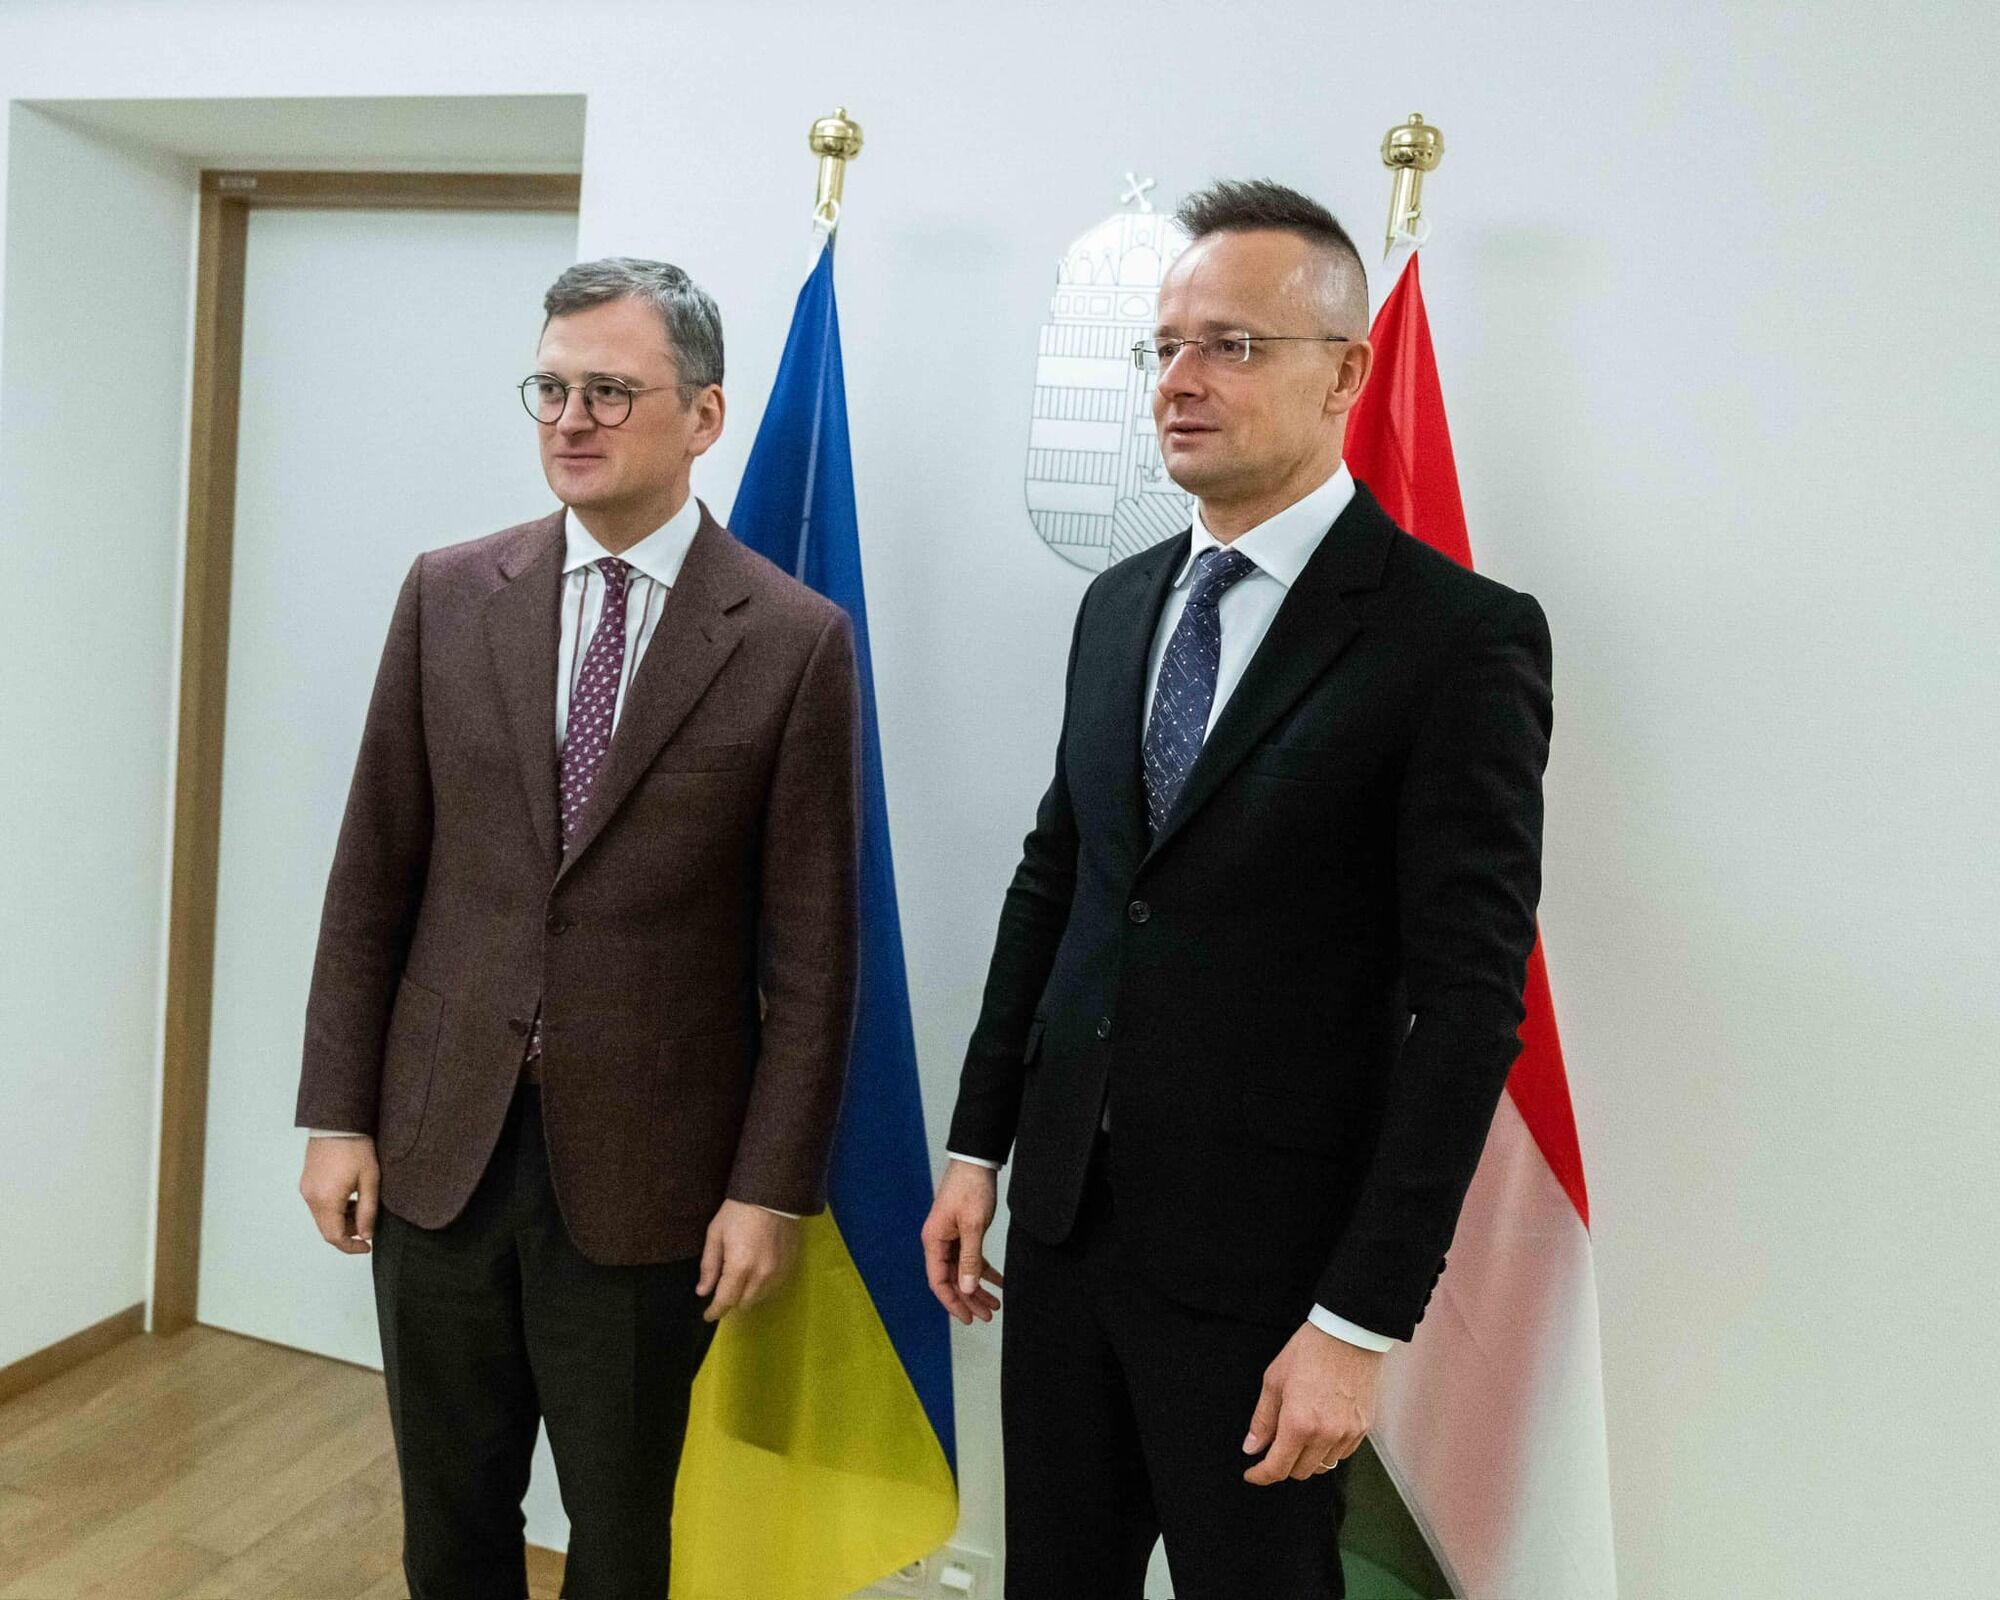 "Була дуже довга, щира розмова": Кулеба і Сіярто обговорили відкриття переговорів про вступ України до ЄС